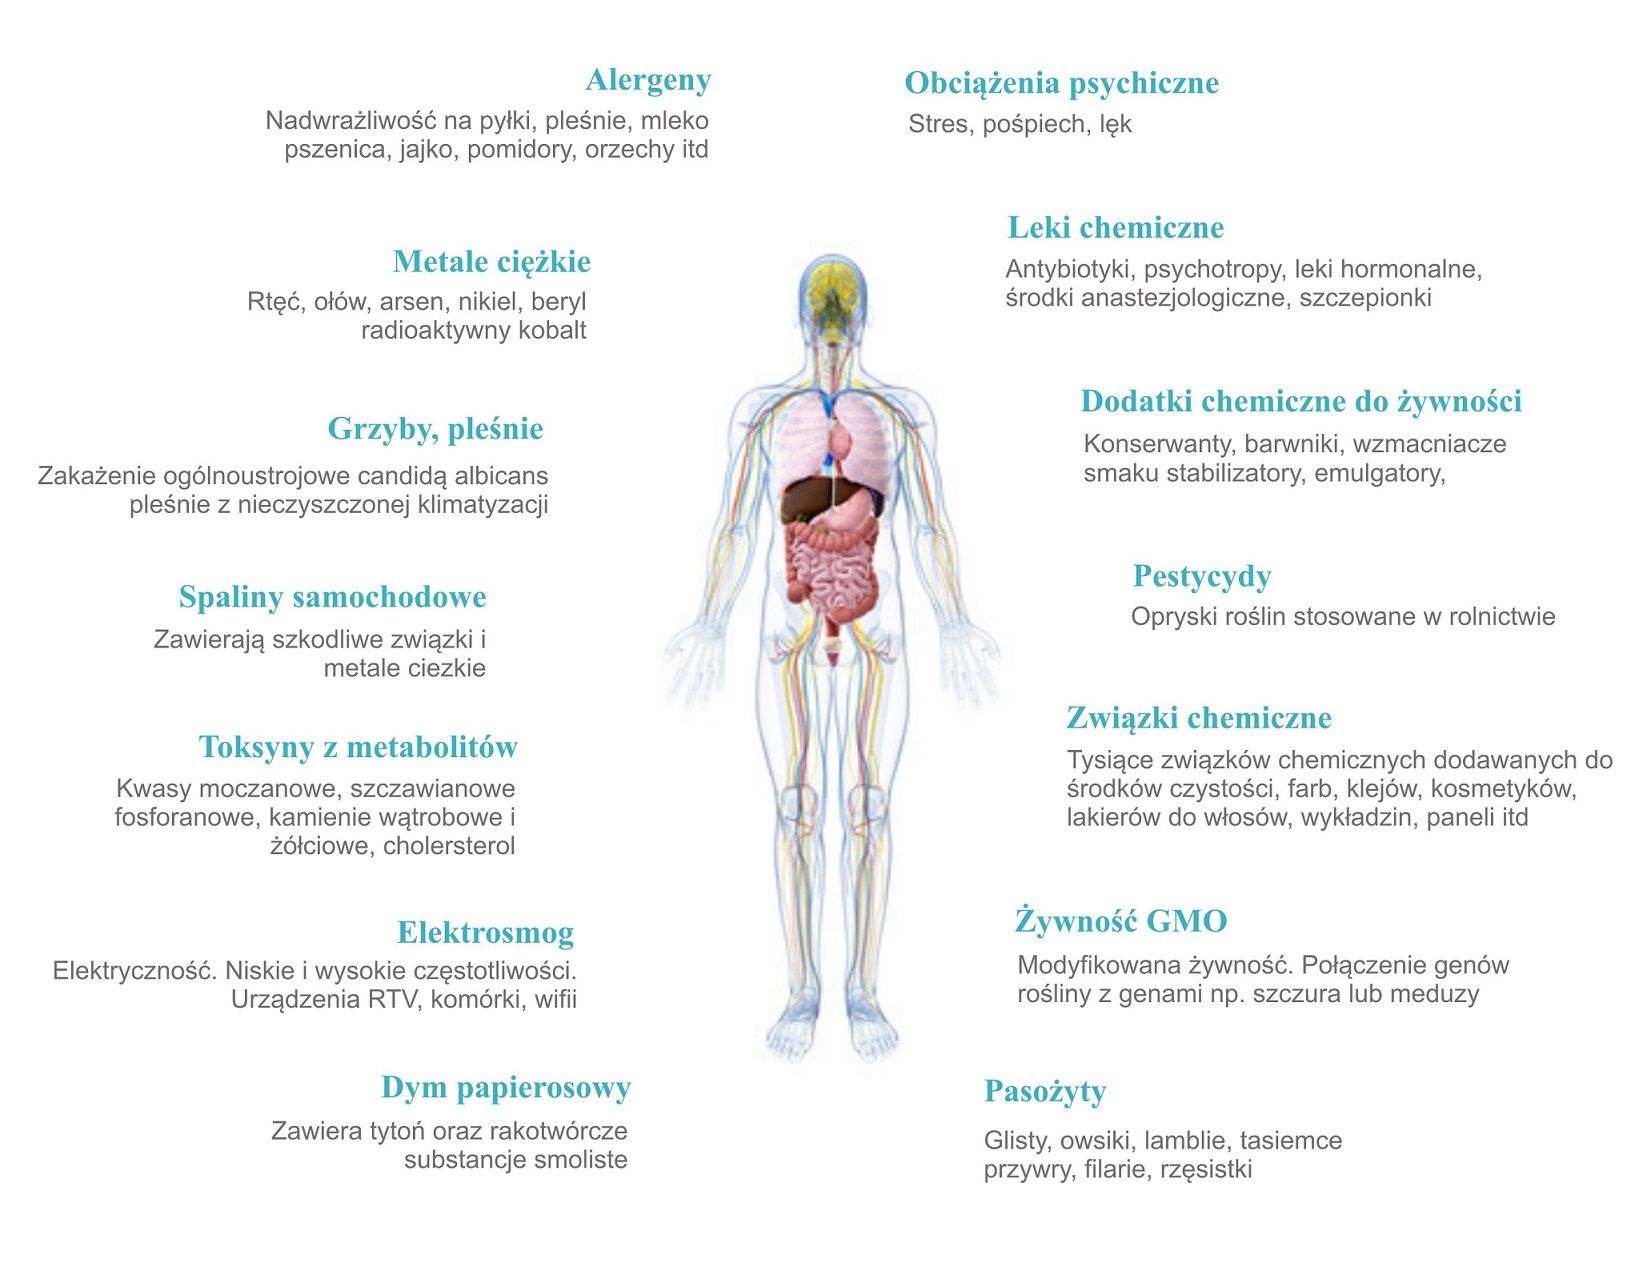 Obraz schematyczny, gdzie w środku jest sylwetka człowieka a po bokach wypisane obciążenia i toksyny jakie obciążają organizm. 